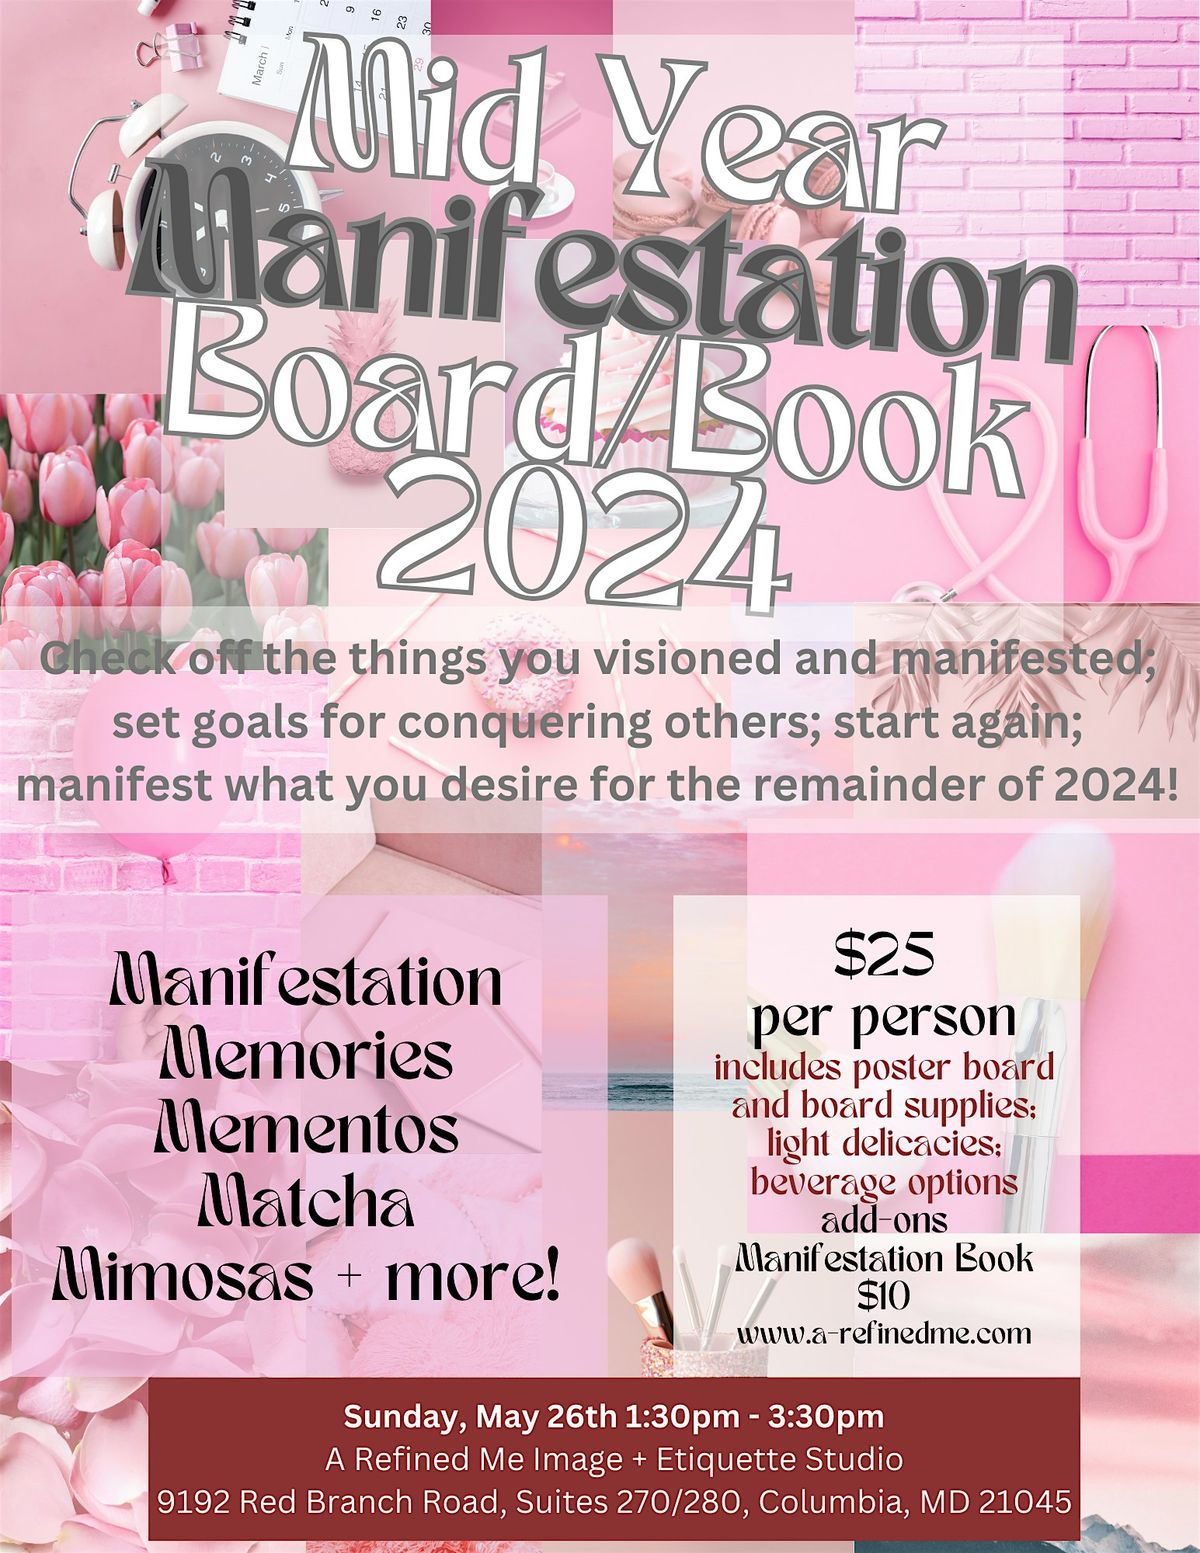 Mid Year Manifestation Board\/Book 2024